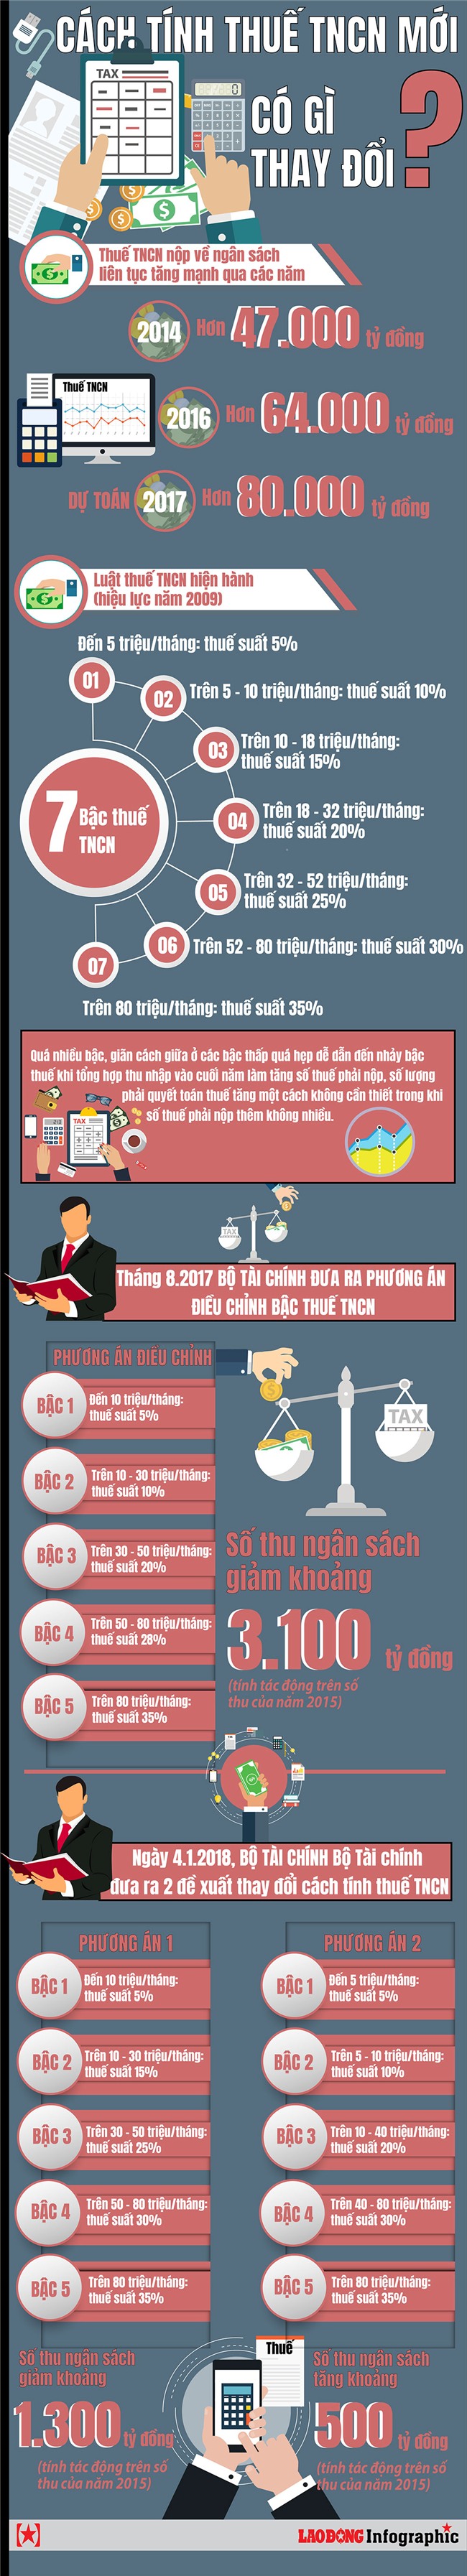 Infographic: Vì sao cách tính thuế thu nhập cá nhân mới gây tranh cãi?